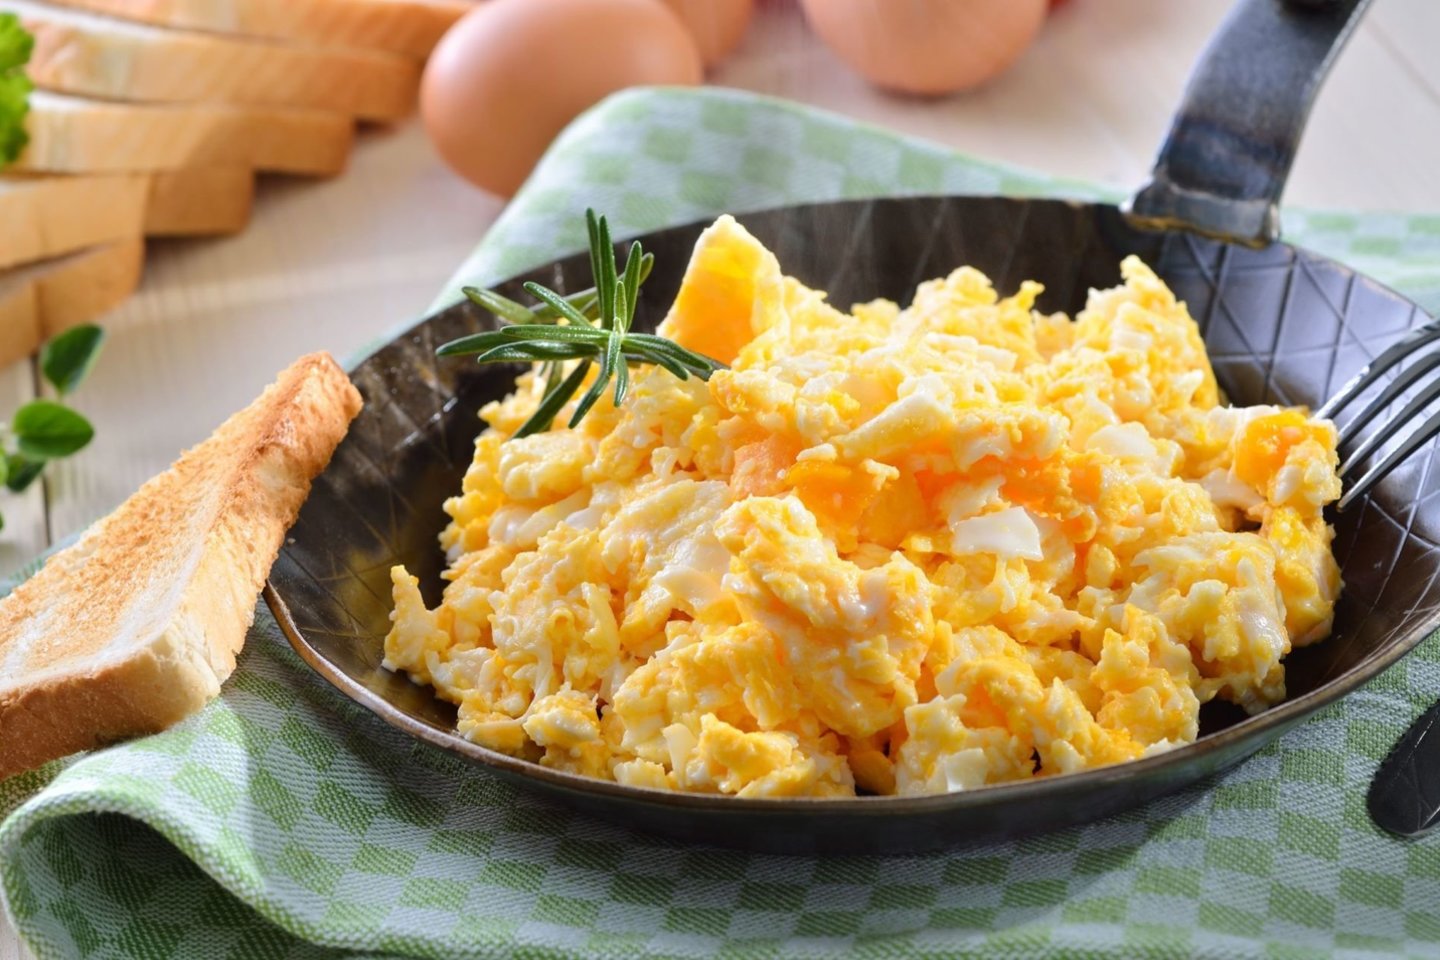 Kiaušiniai yra nepaprastai universalus produktas, kurį galima valgyti bet kuriuo dienos metu ir paruošti iš jų įvairiausius patiekalus.<br>123rf nuotr.